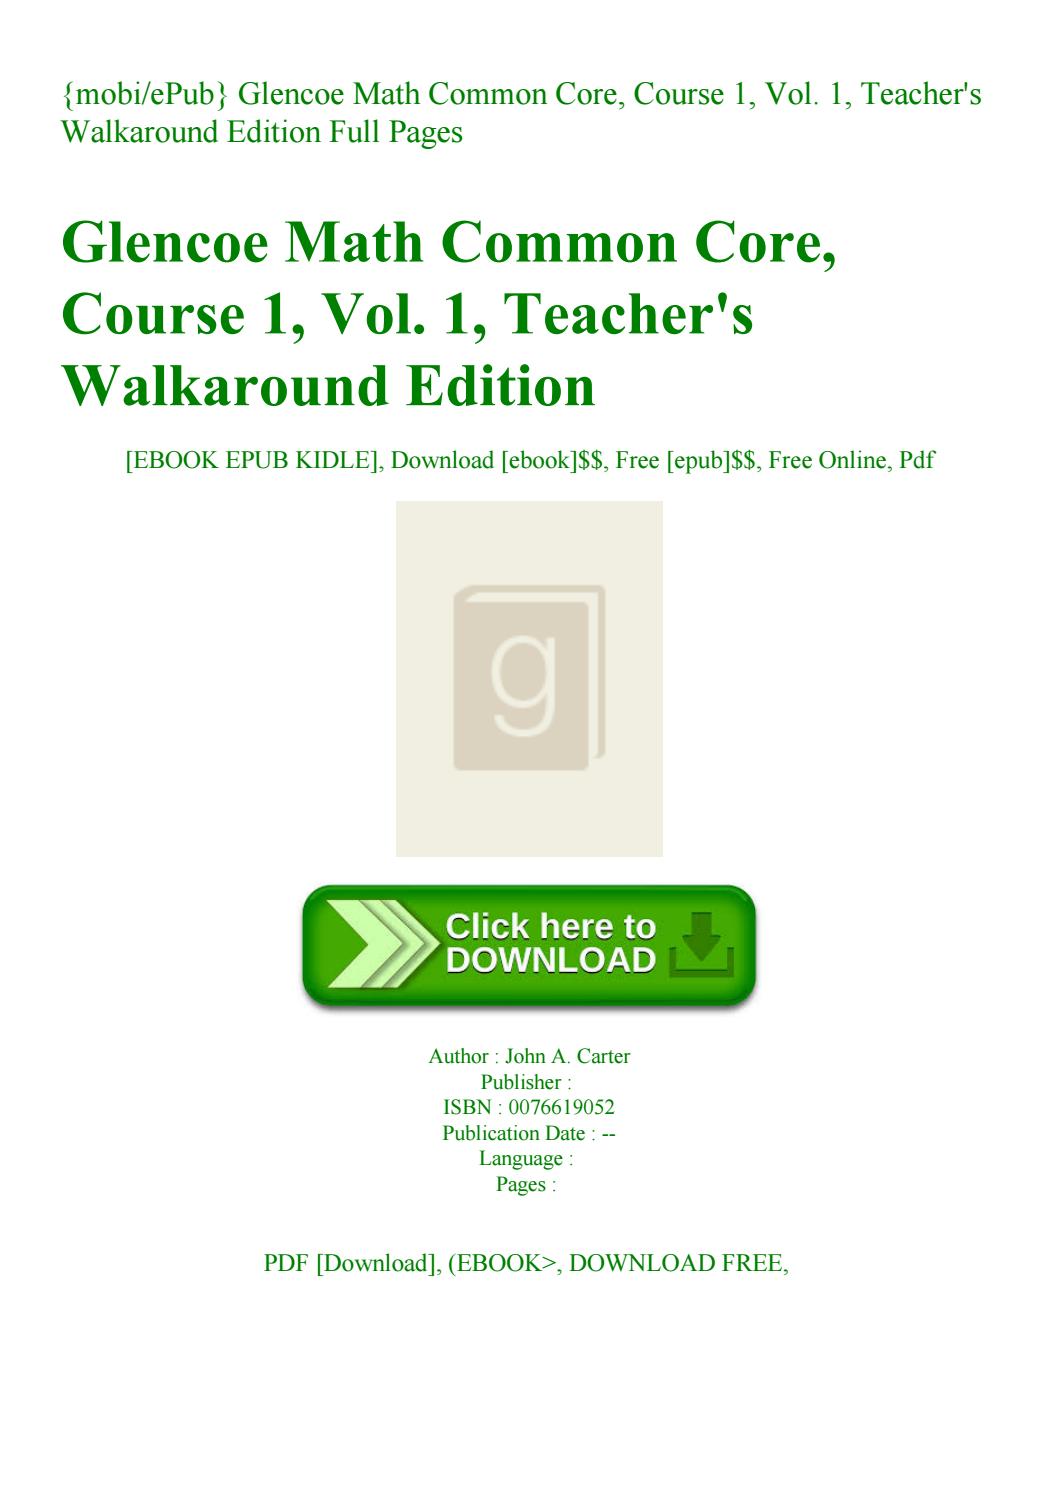 glencoe-math-course-1-pdf-aceever